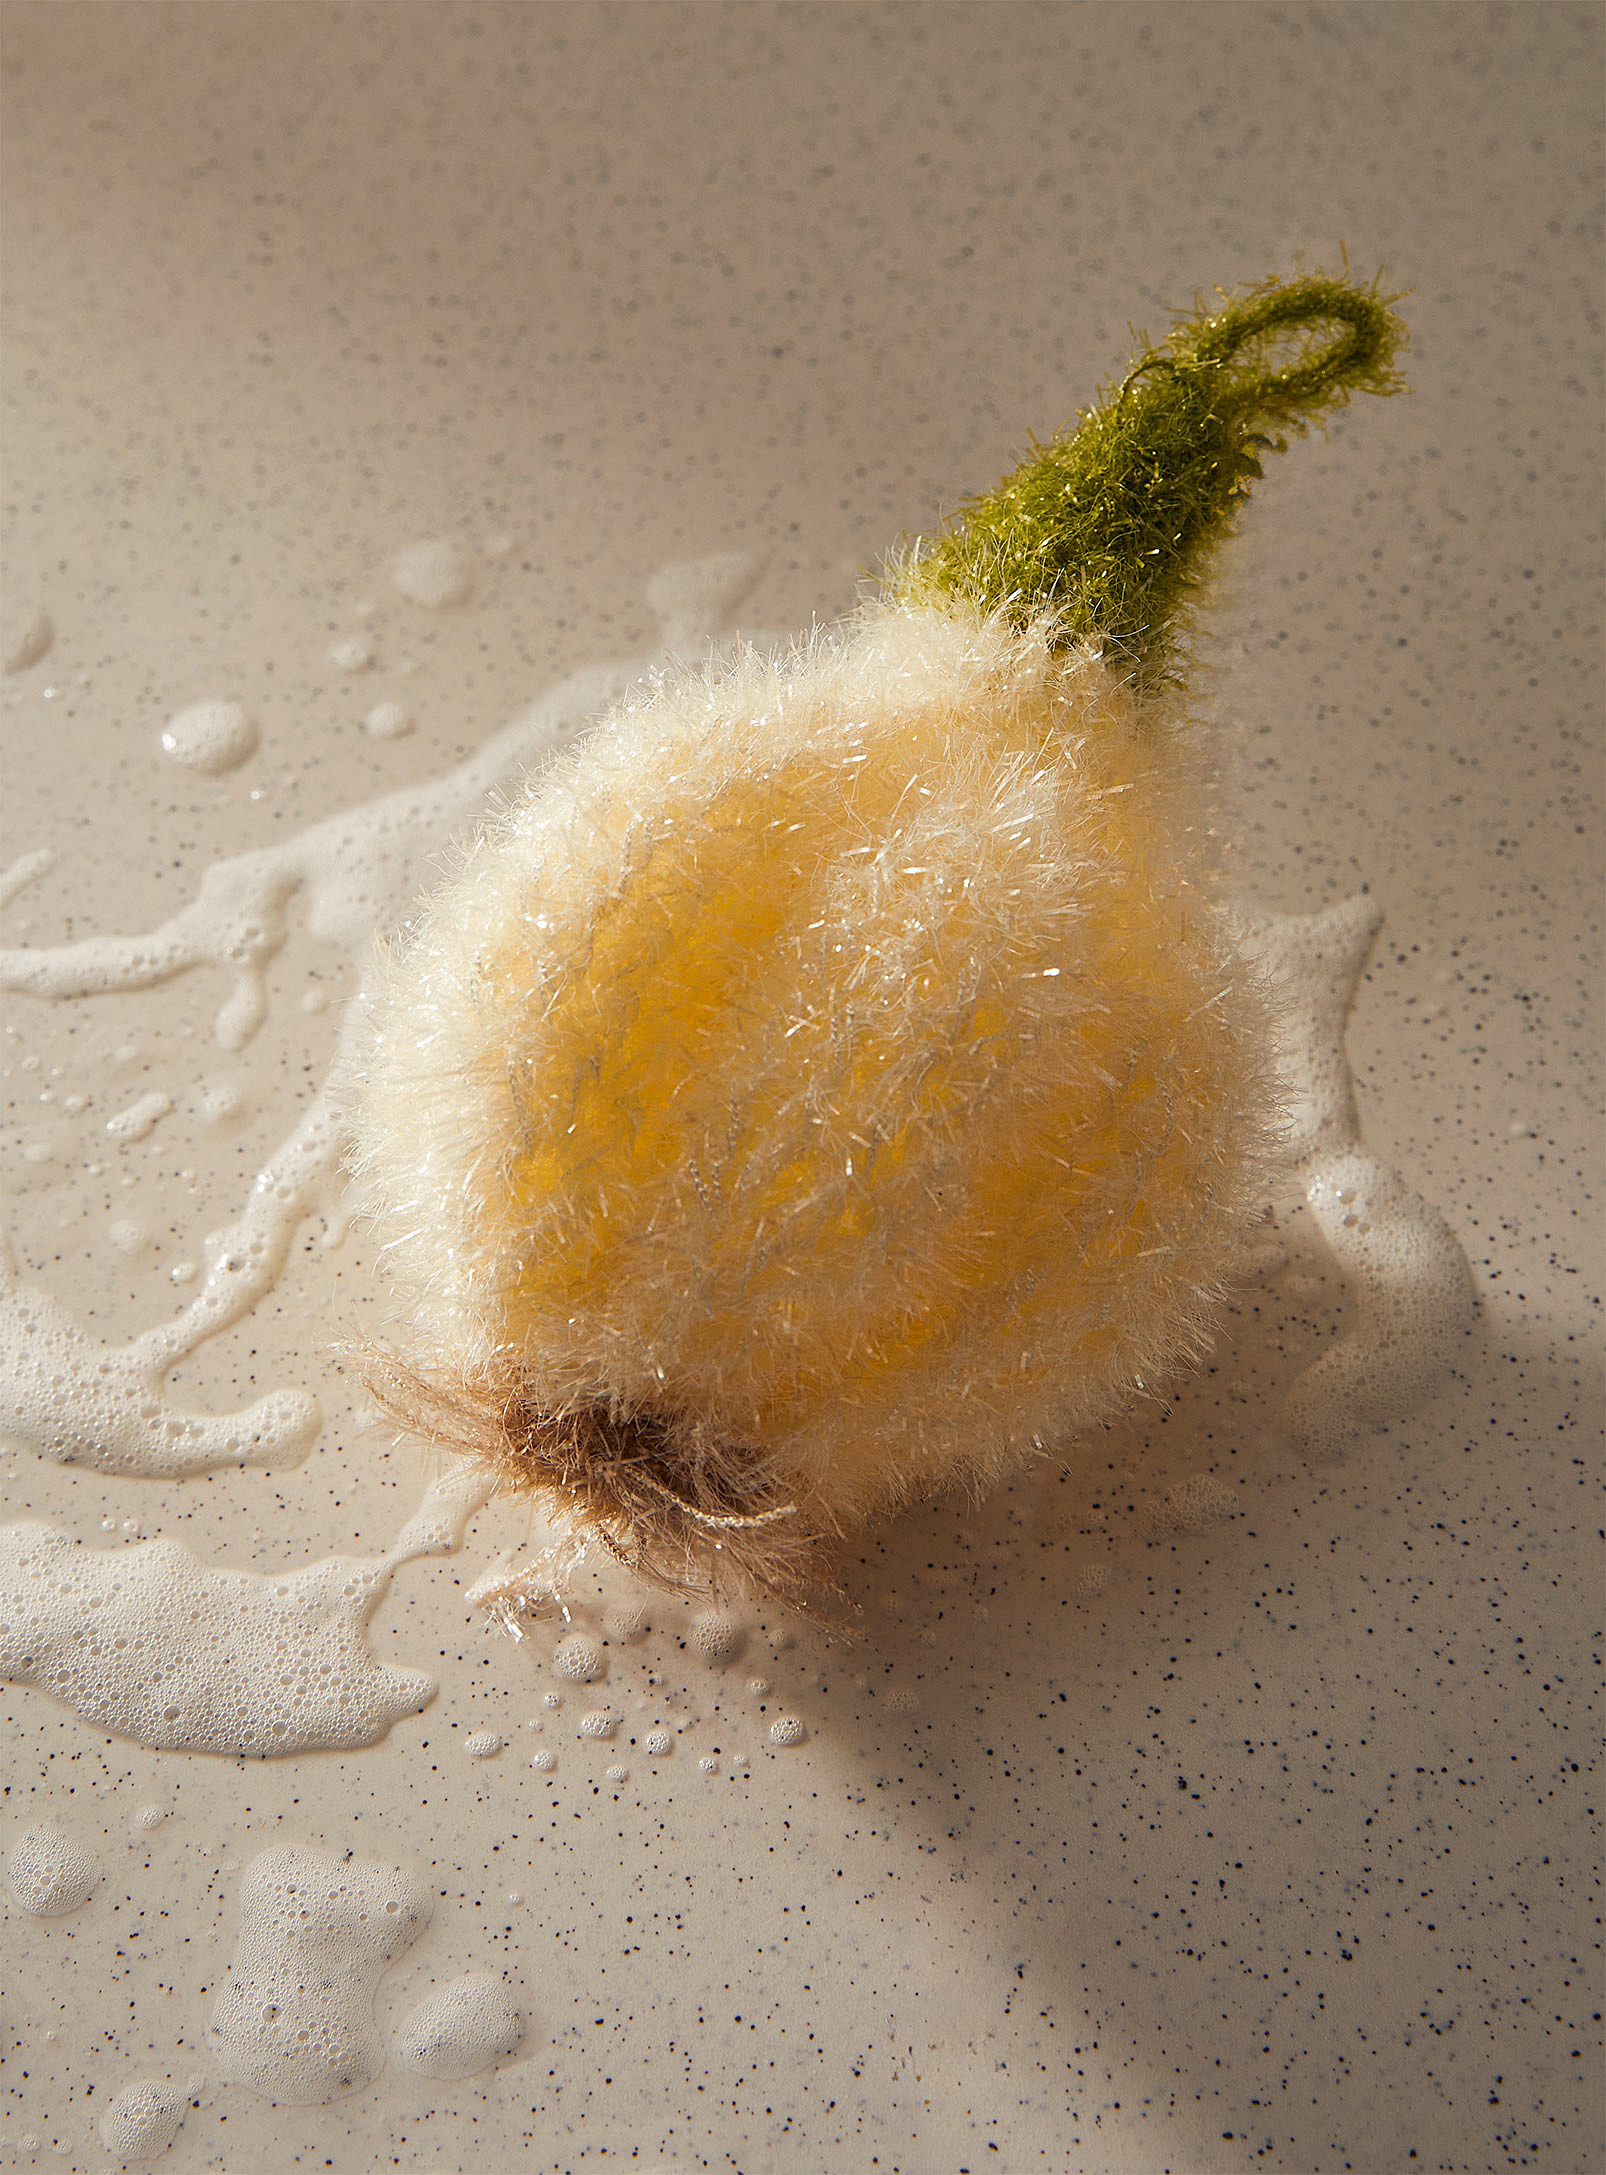 Simons Maison Vegetable Picking Scrubbing Sponge In Patterned Ecru